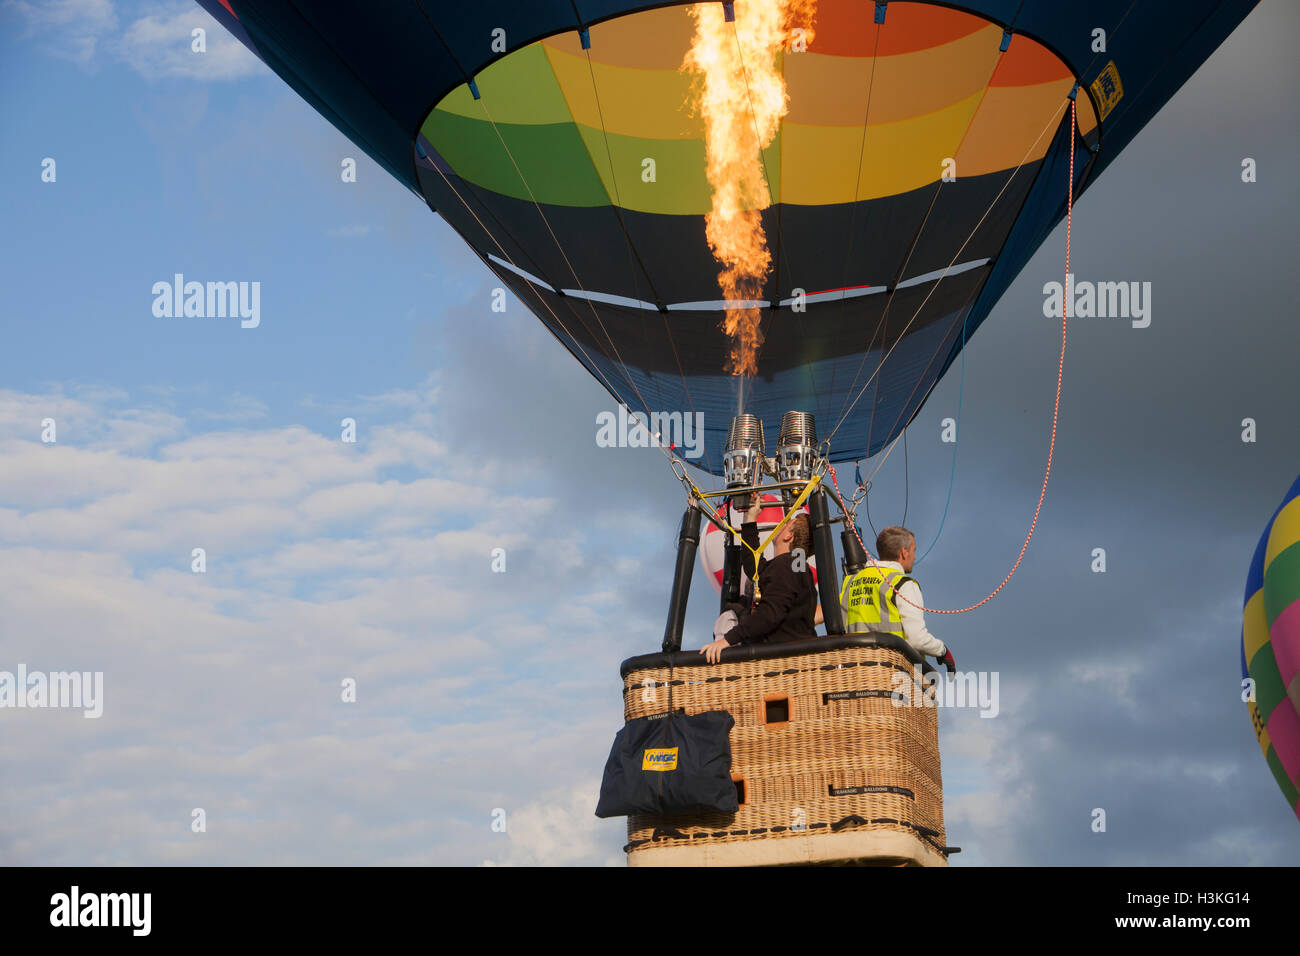 ik lees een boek Bereid Het strand Balloon gondola hi-res stock photography and images - Alamy